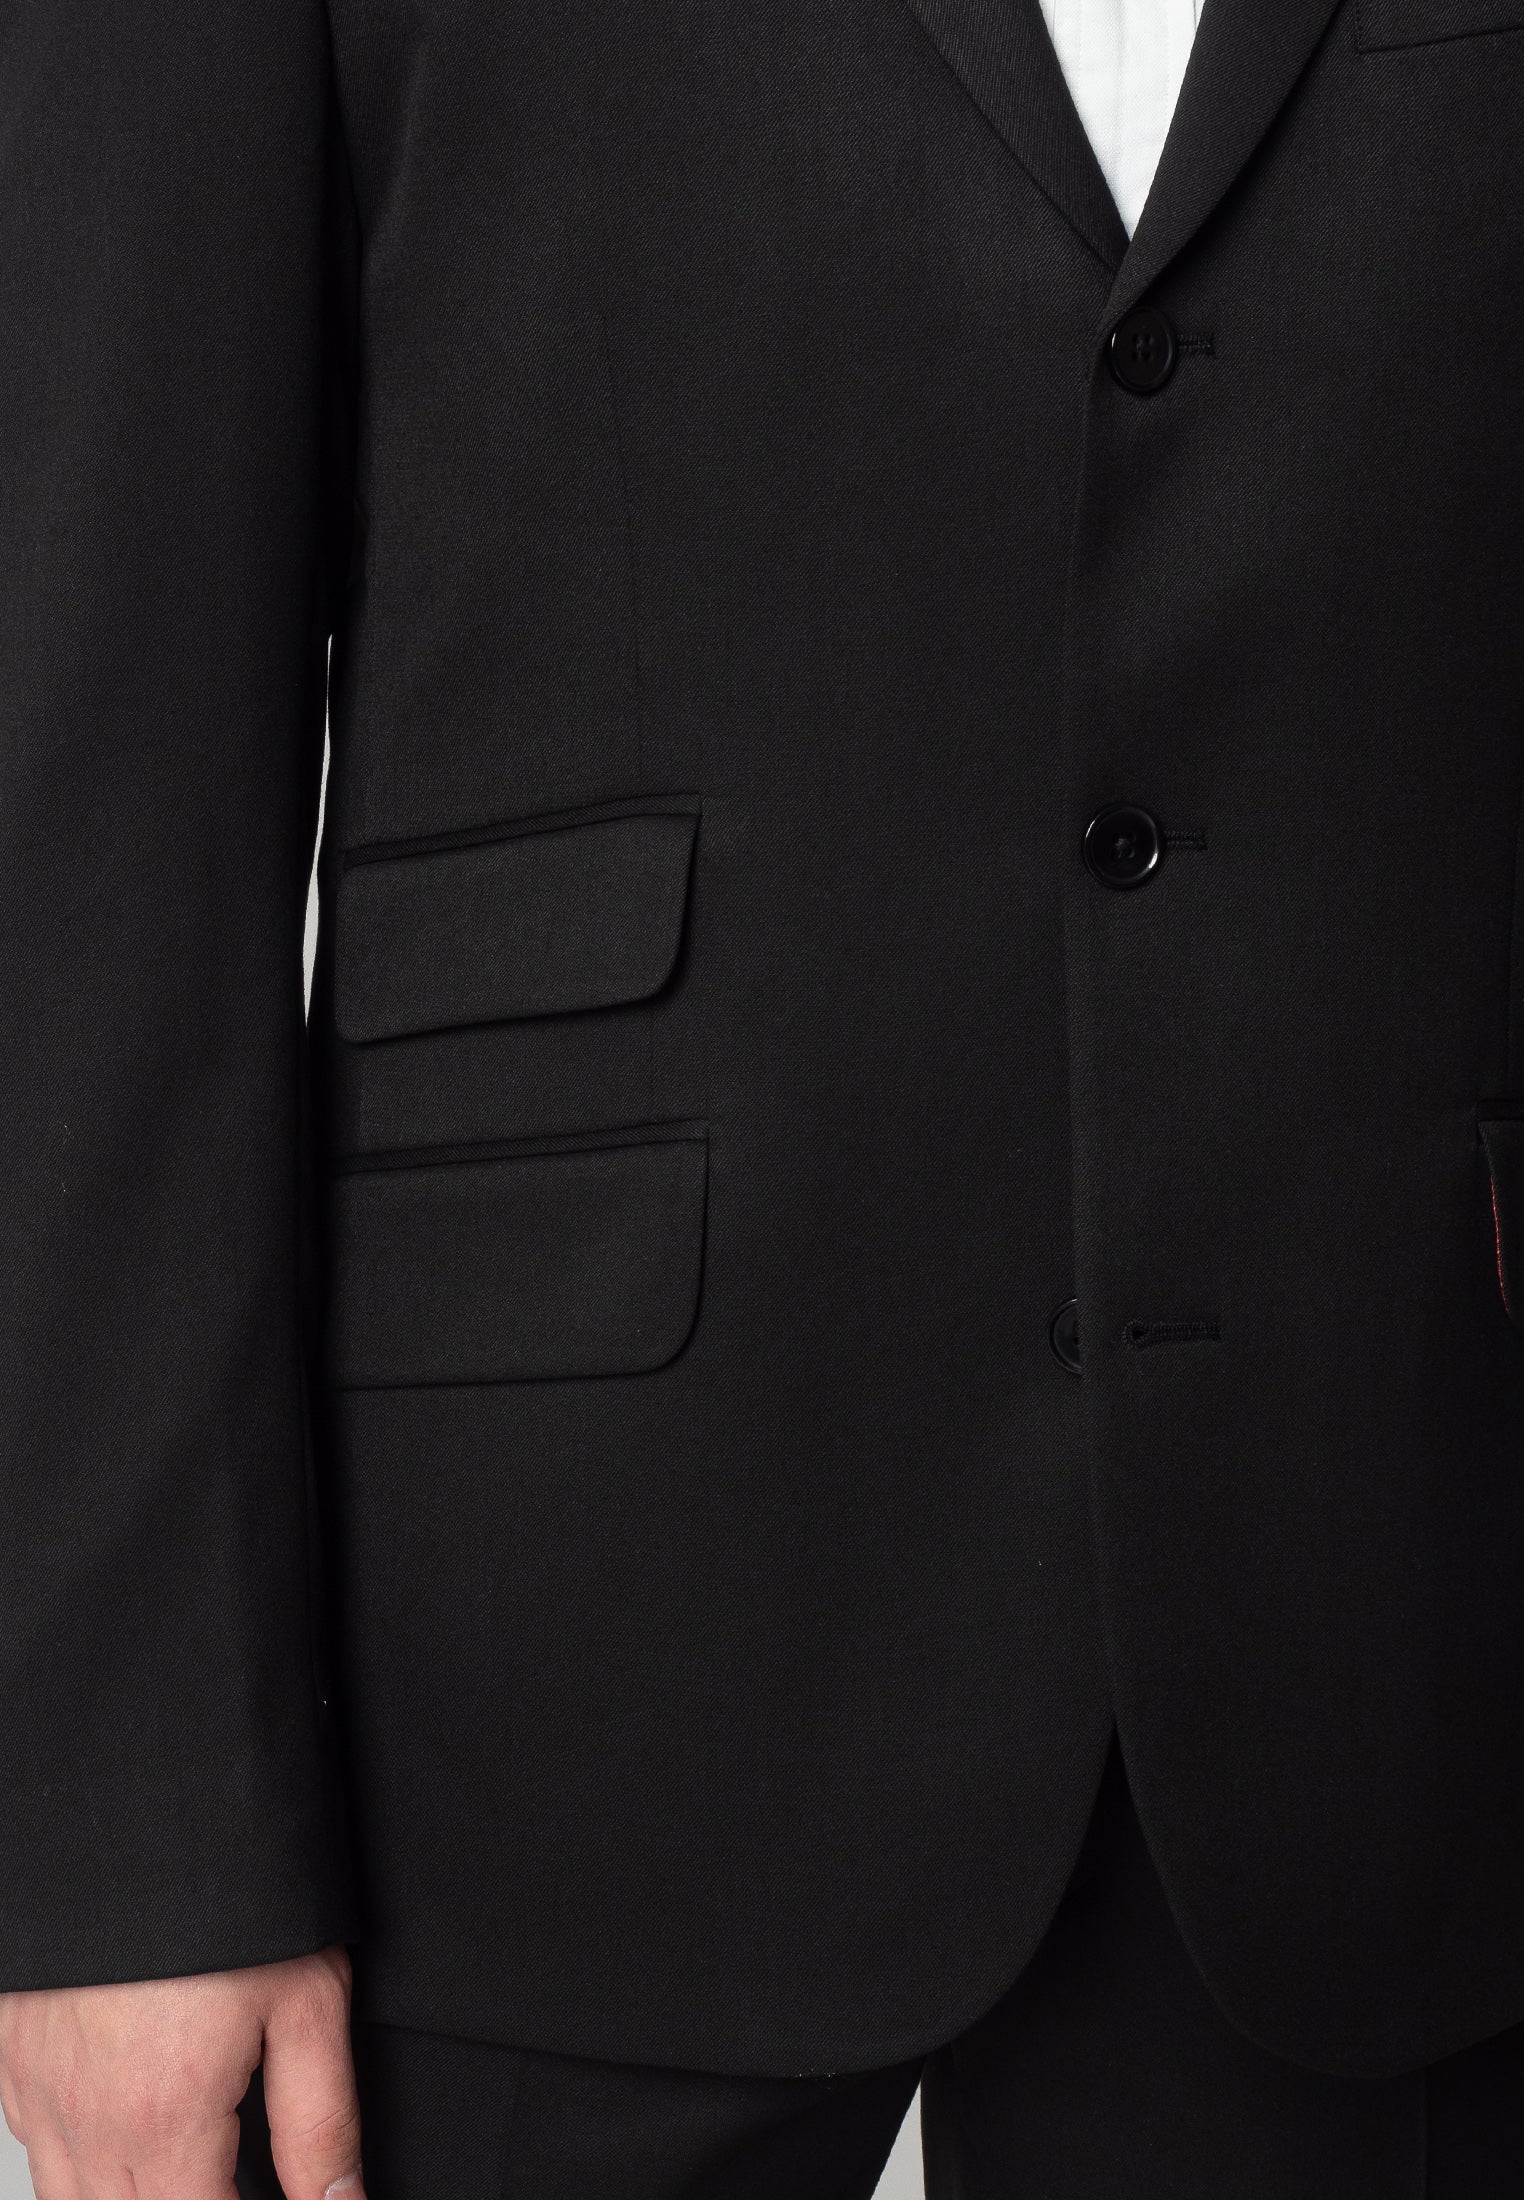 Plain Black Suit Jacket - Mod Suit - Mod Clothing – Merc